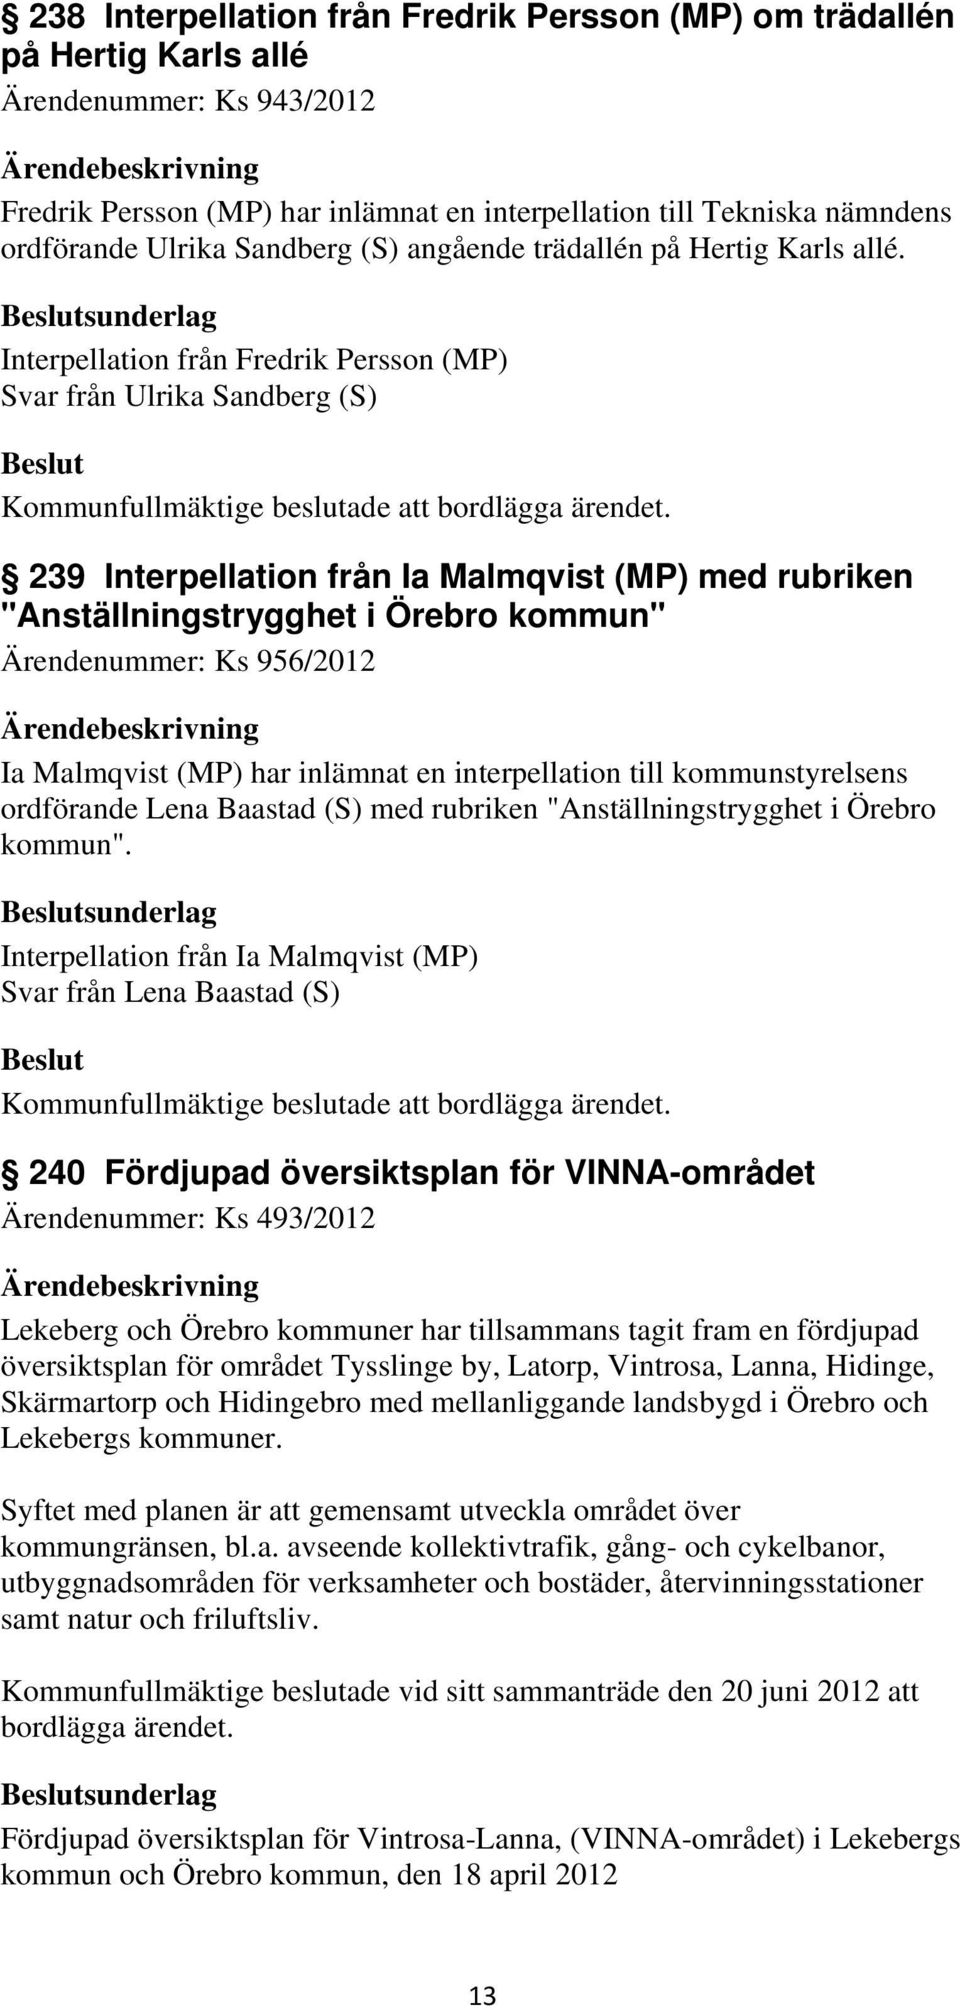 sunderlag Interpellation från Fredrik Persson (MP) Svar från Ulrika Sandberg (S) 239 Interpellation från Ia Malmqvist (MP) med rubriken "Anställningstrygghet i Örebro kommun" Ärendenummer: Ks